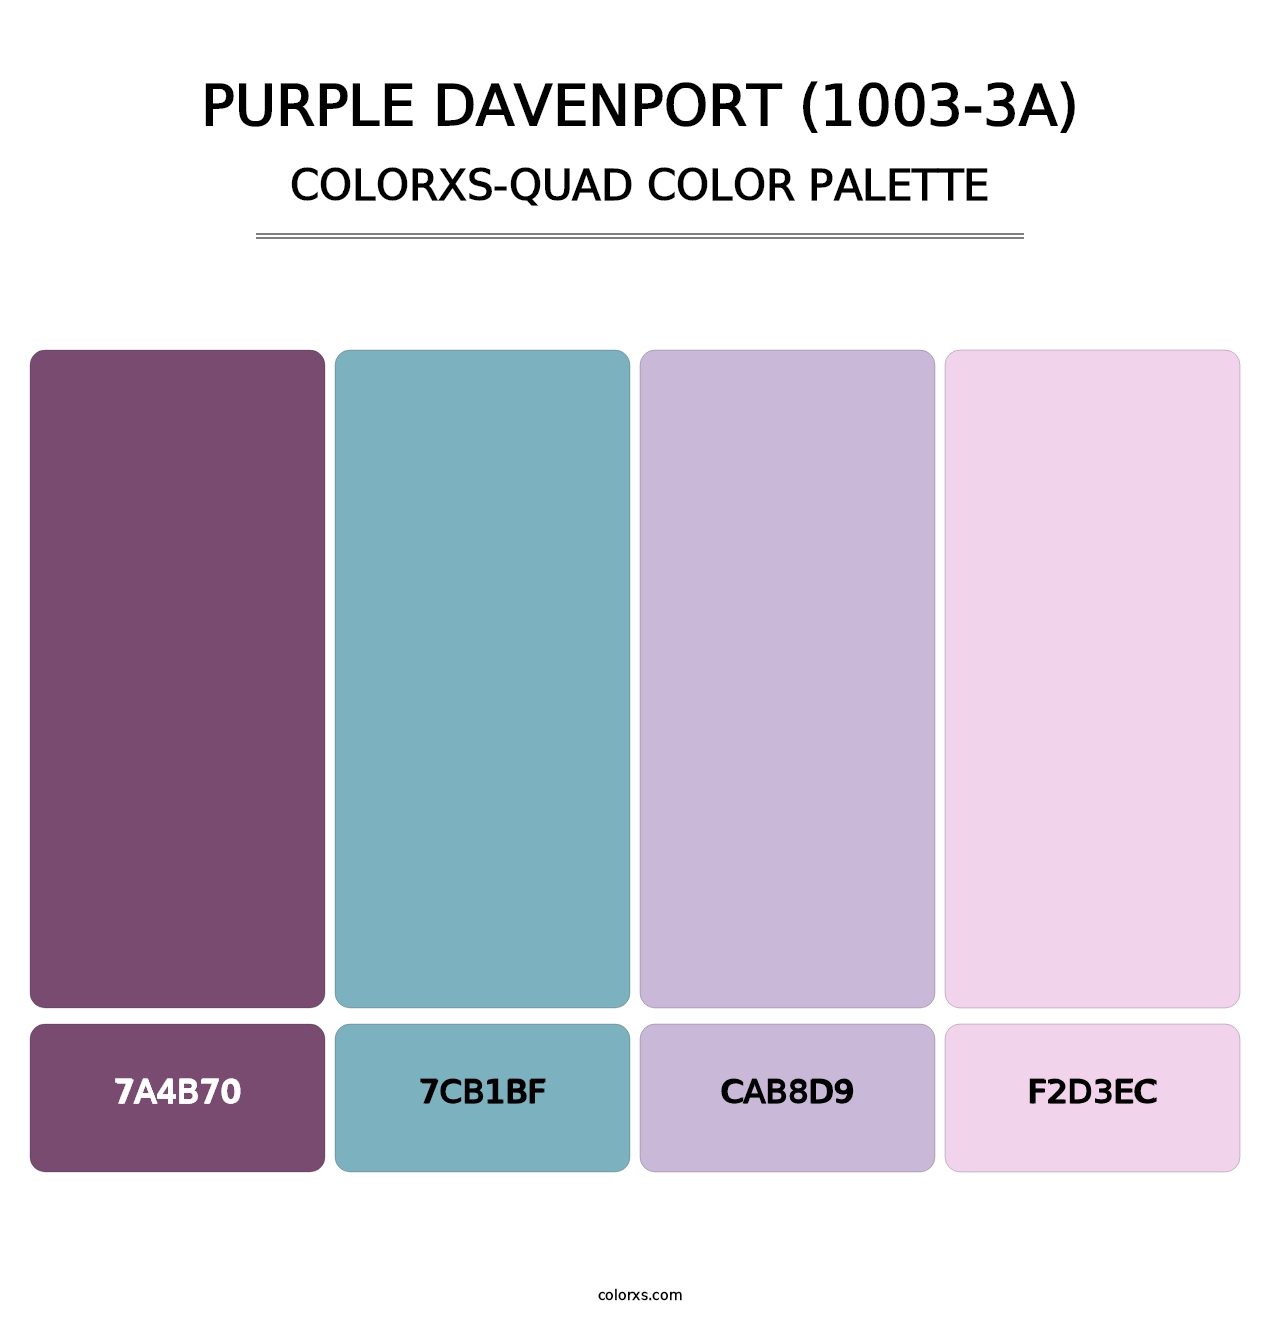 Purple Davenport (1003-3A) - Colorxs Quad Palette